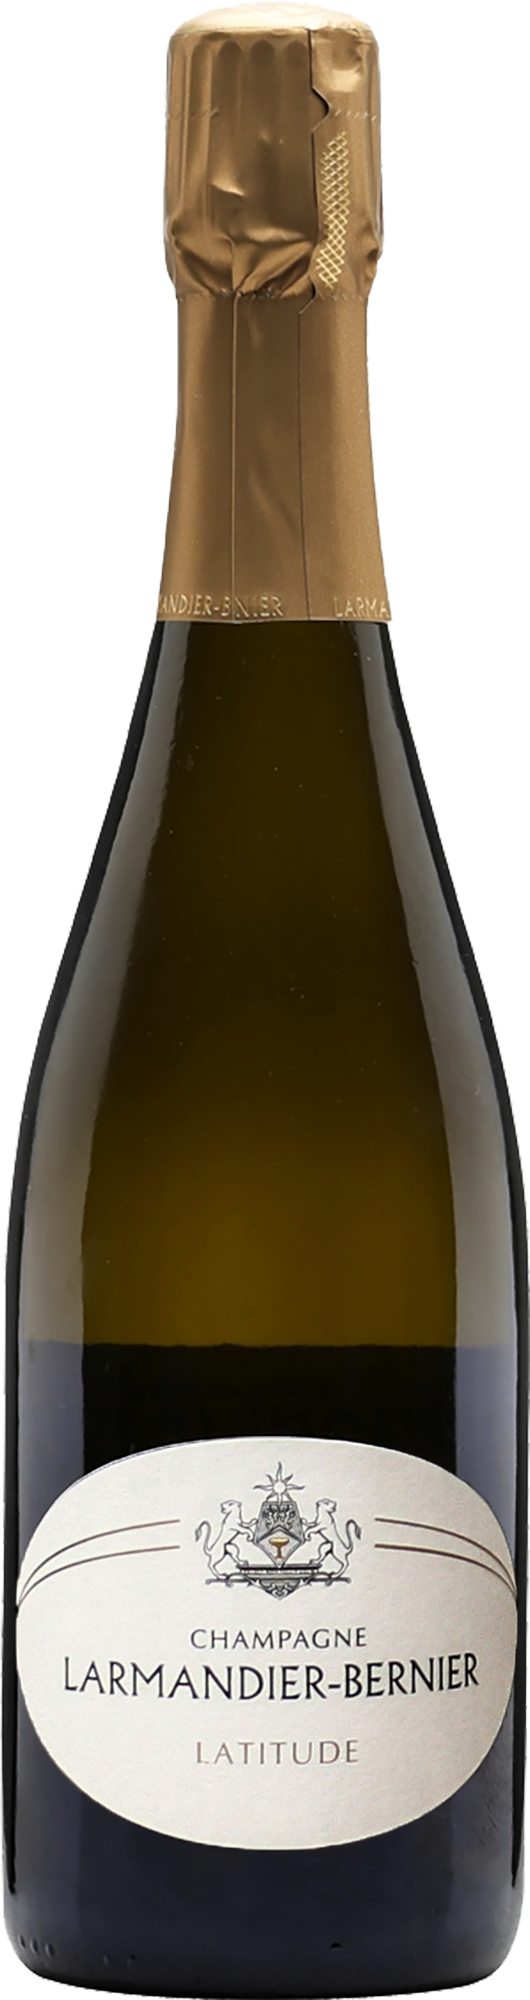 Champagne Larmandier-Bernier Latitude Blanc de Blancs NV (Base 20. Disg. Feb 2023)